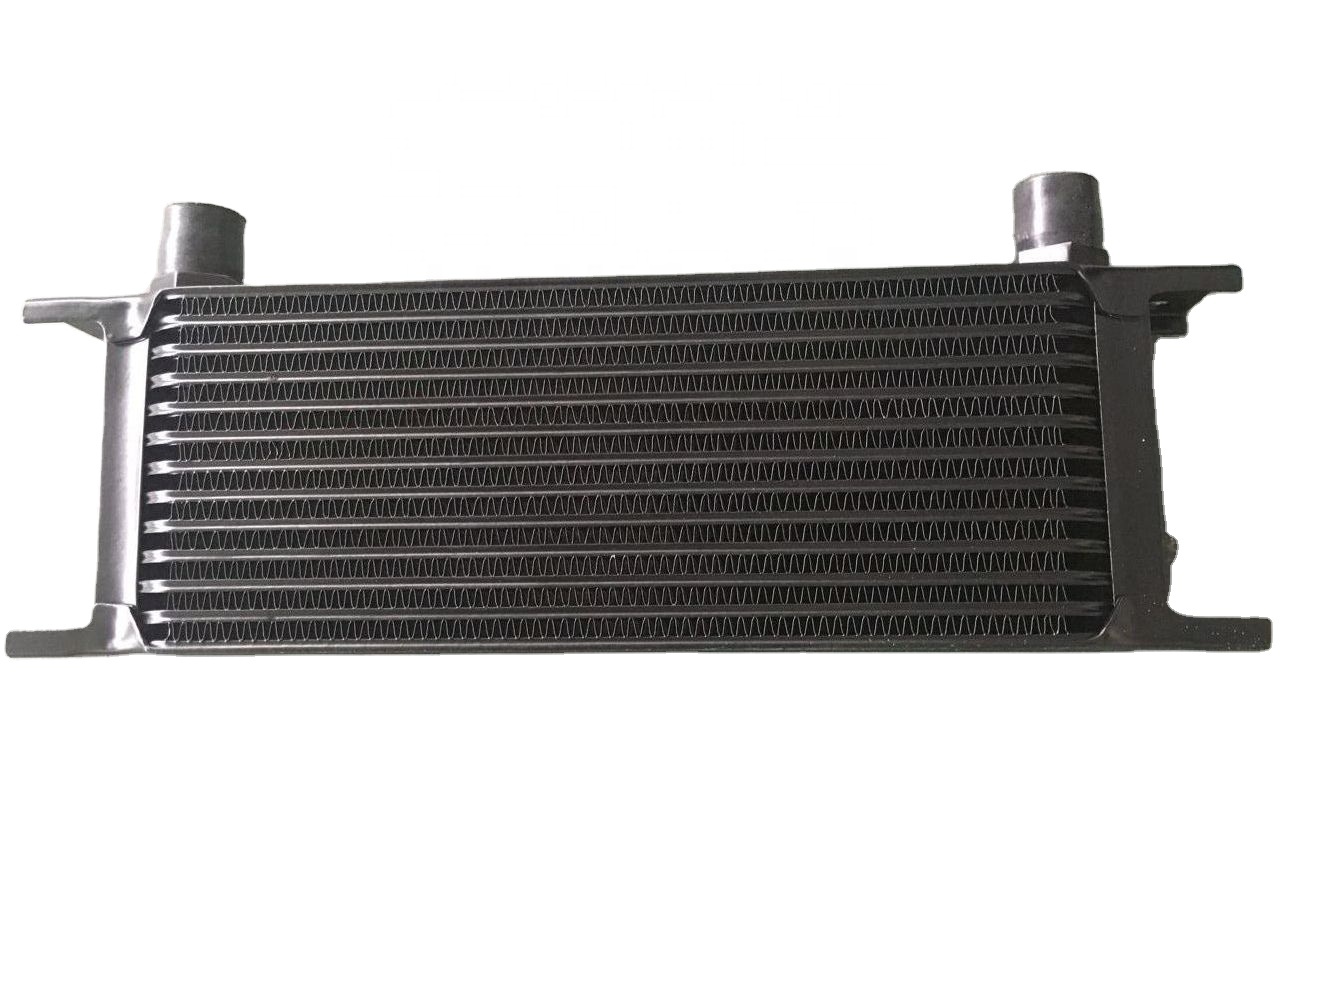 Plate Fin Automobile Engine Oil Cooler